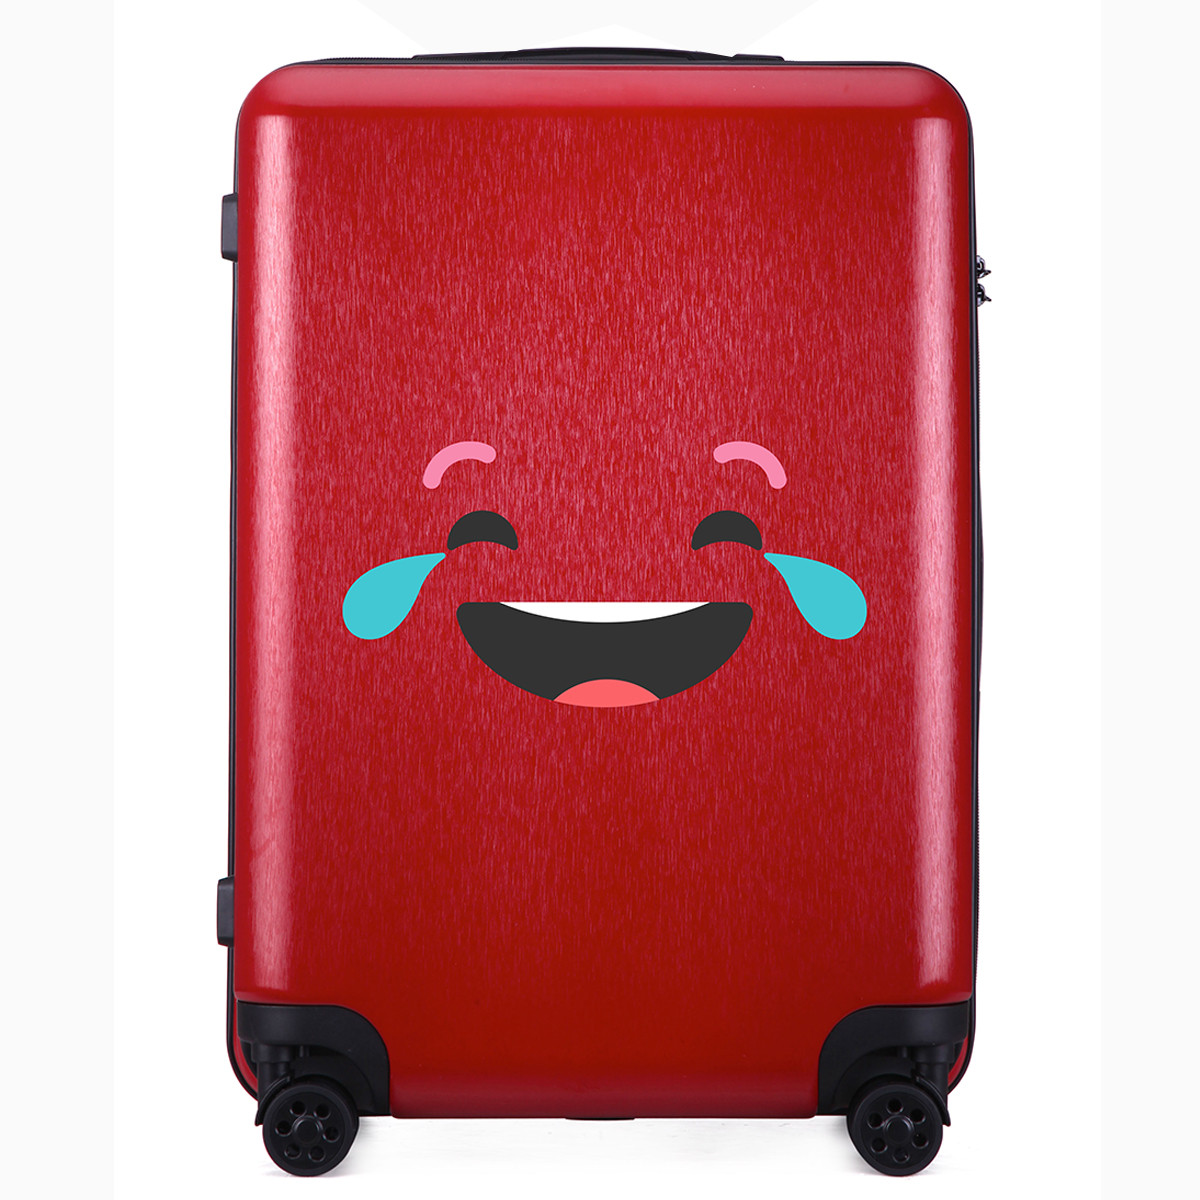 塞行李箱表情包图片